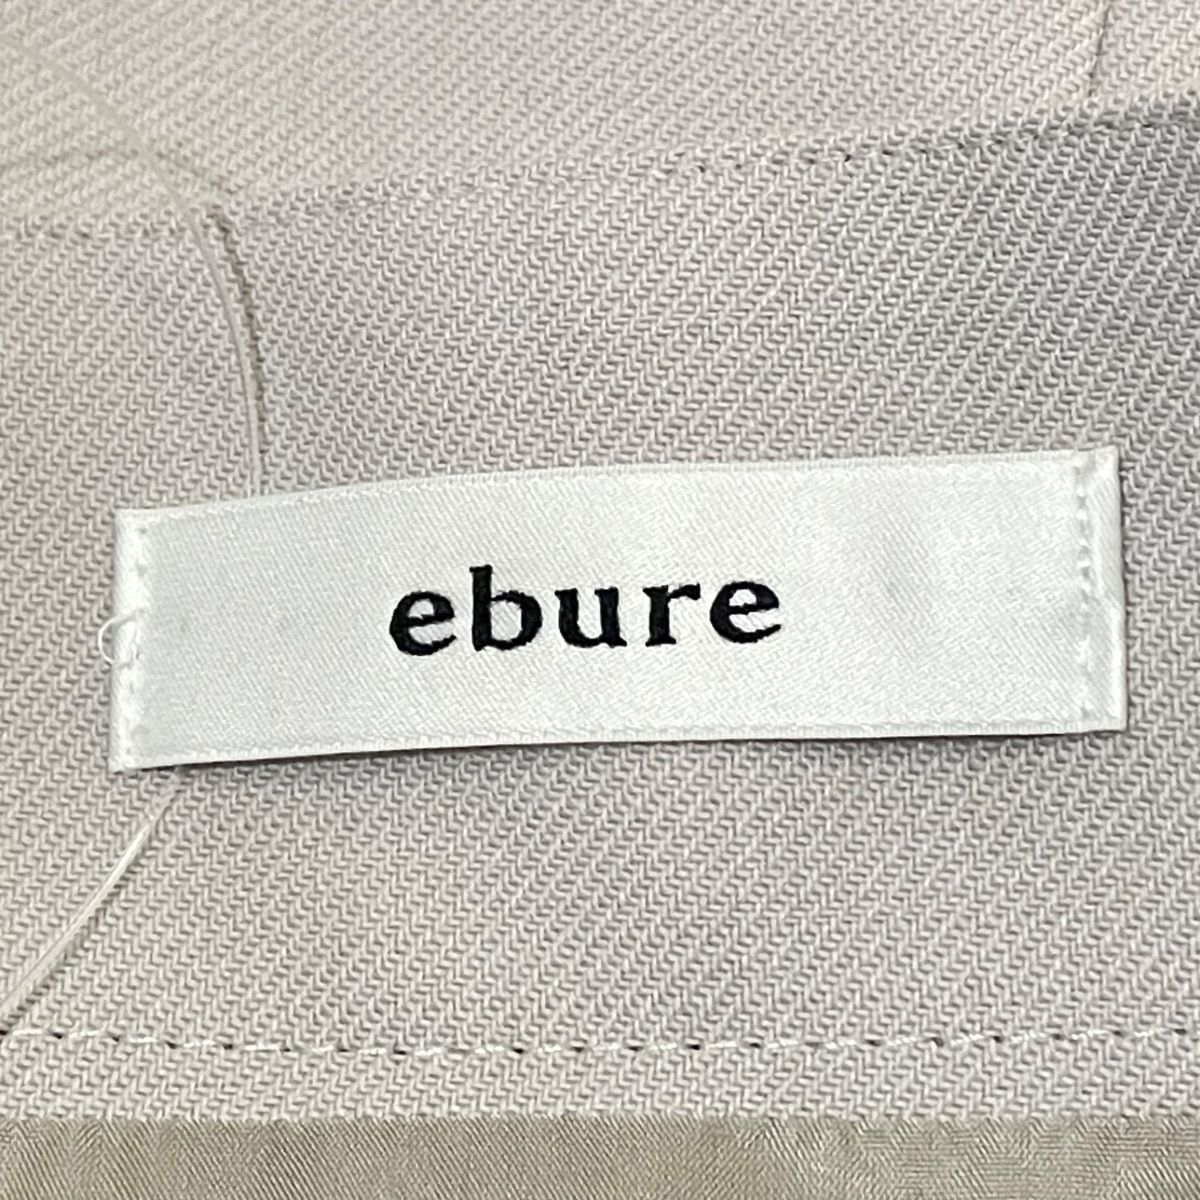 ebure(エブール) 巻きスカート サイズ36 S レディース美品 - ライト ...